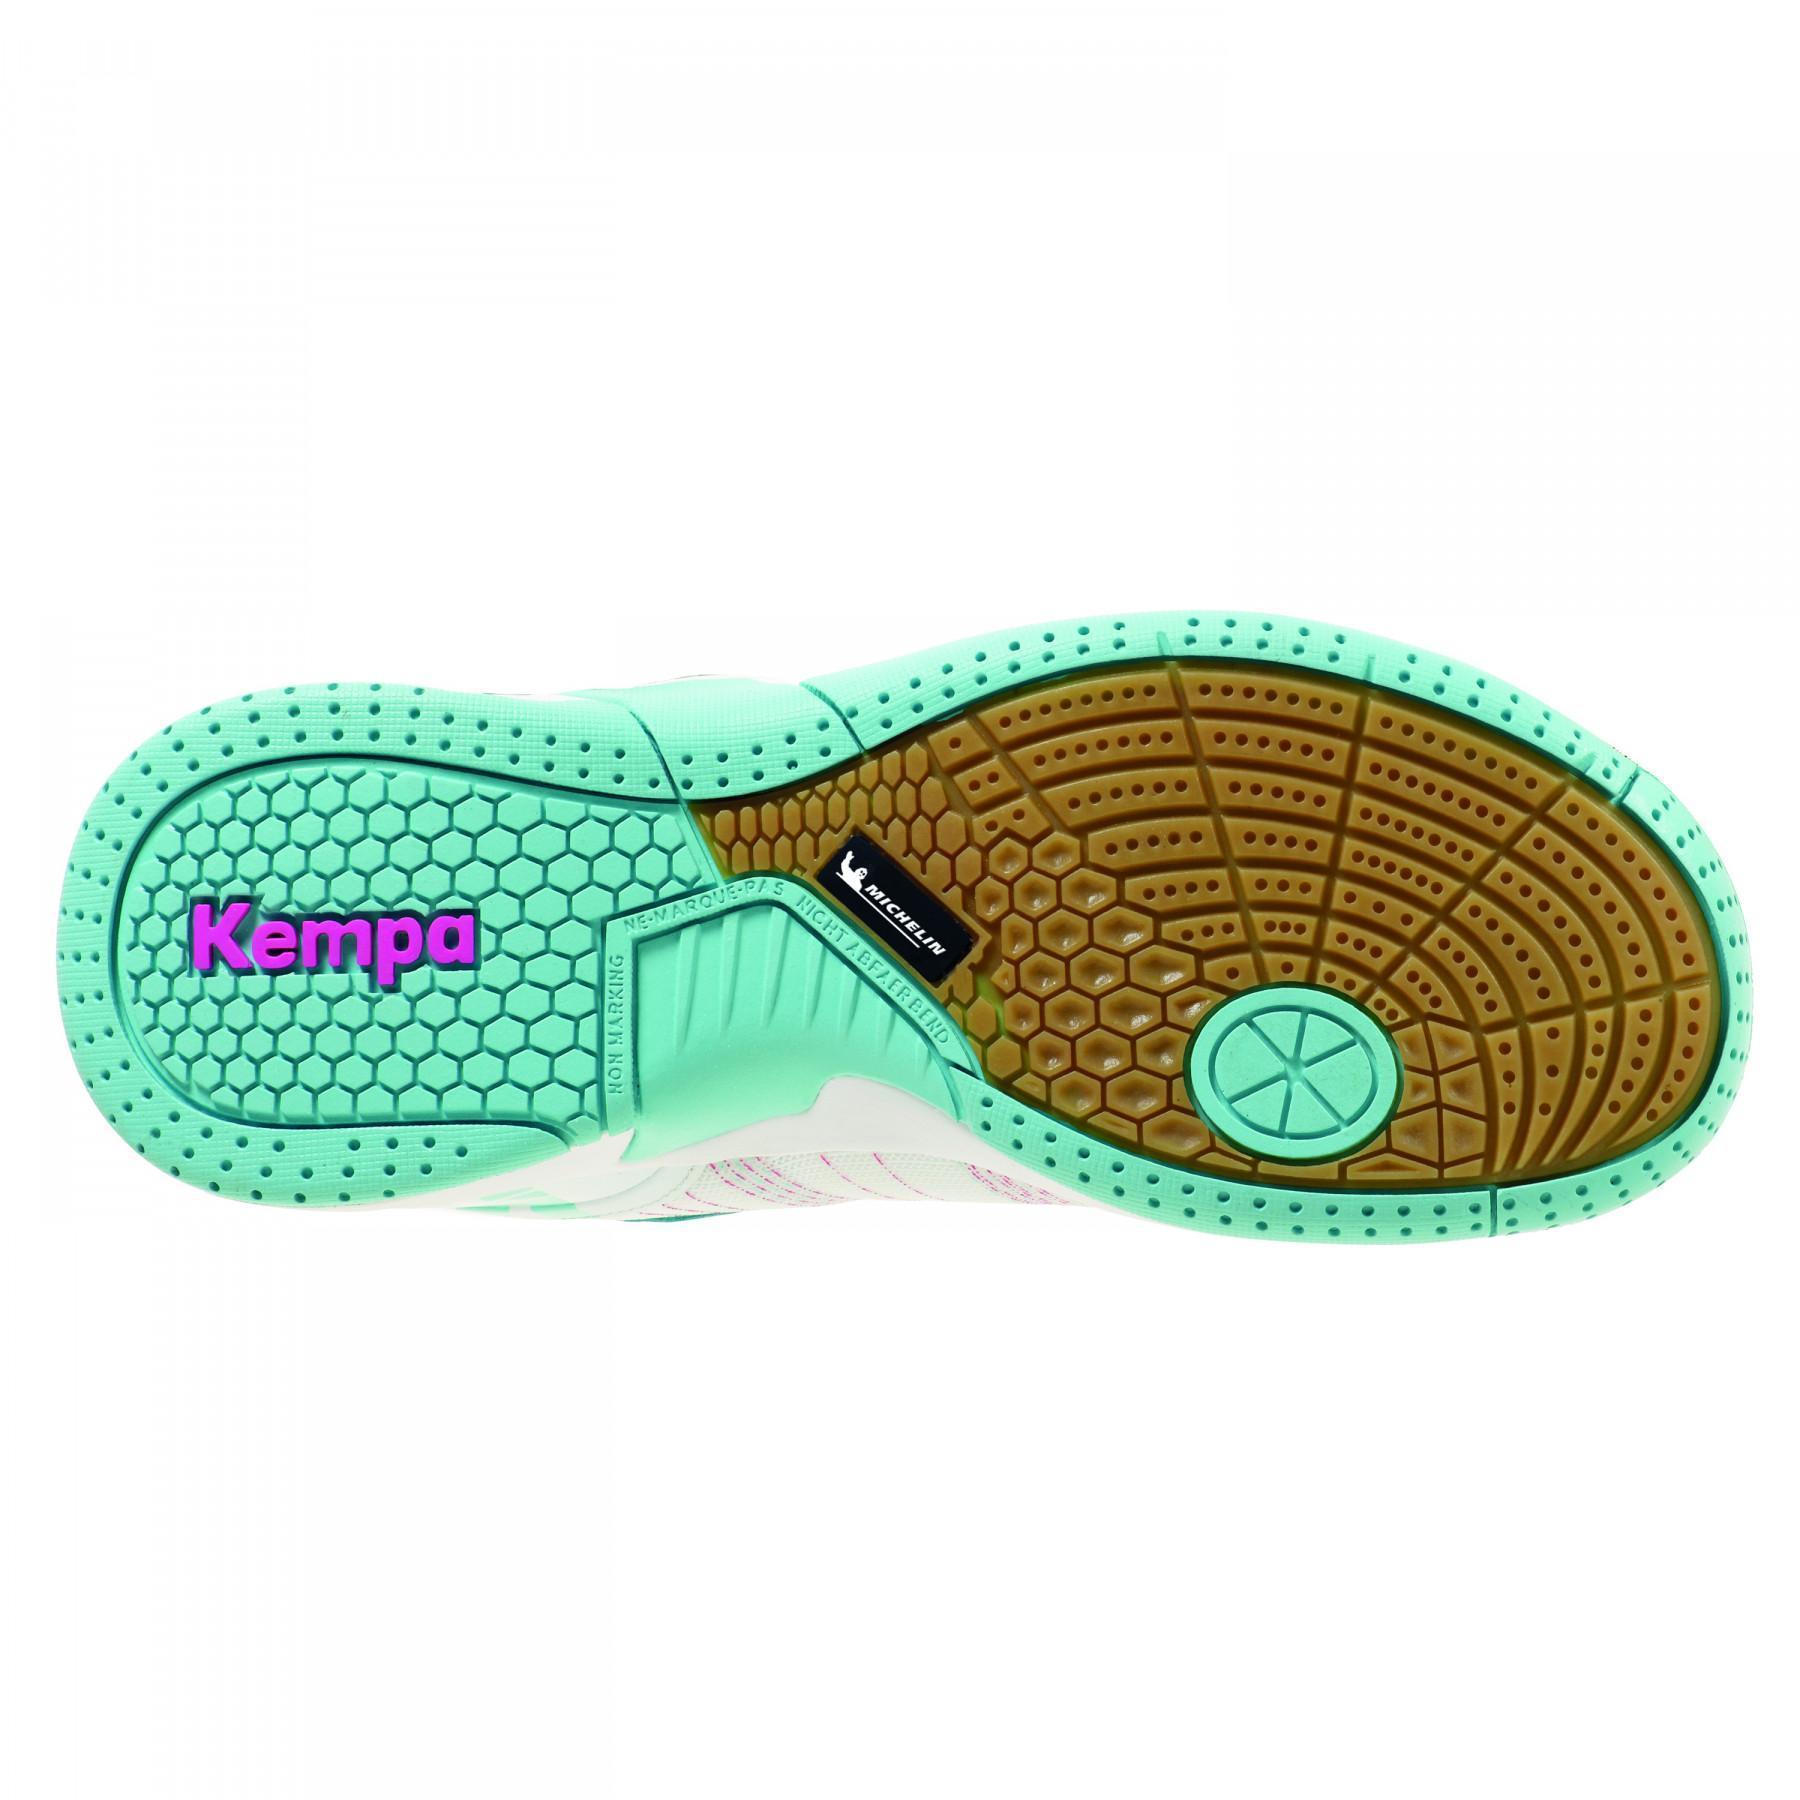 Kinderschoen met klittenband Kempa